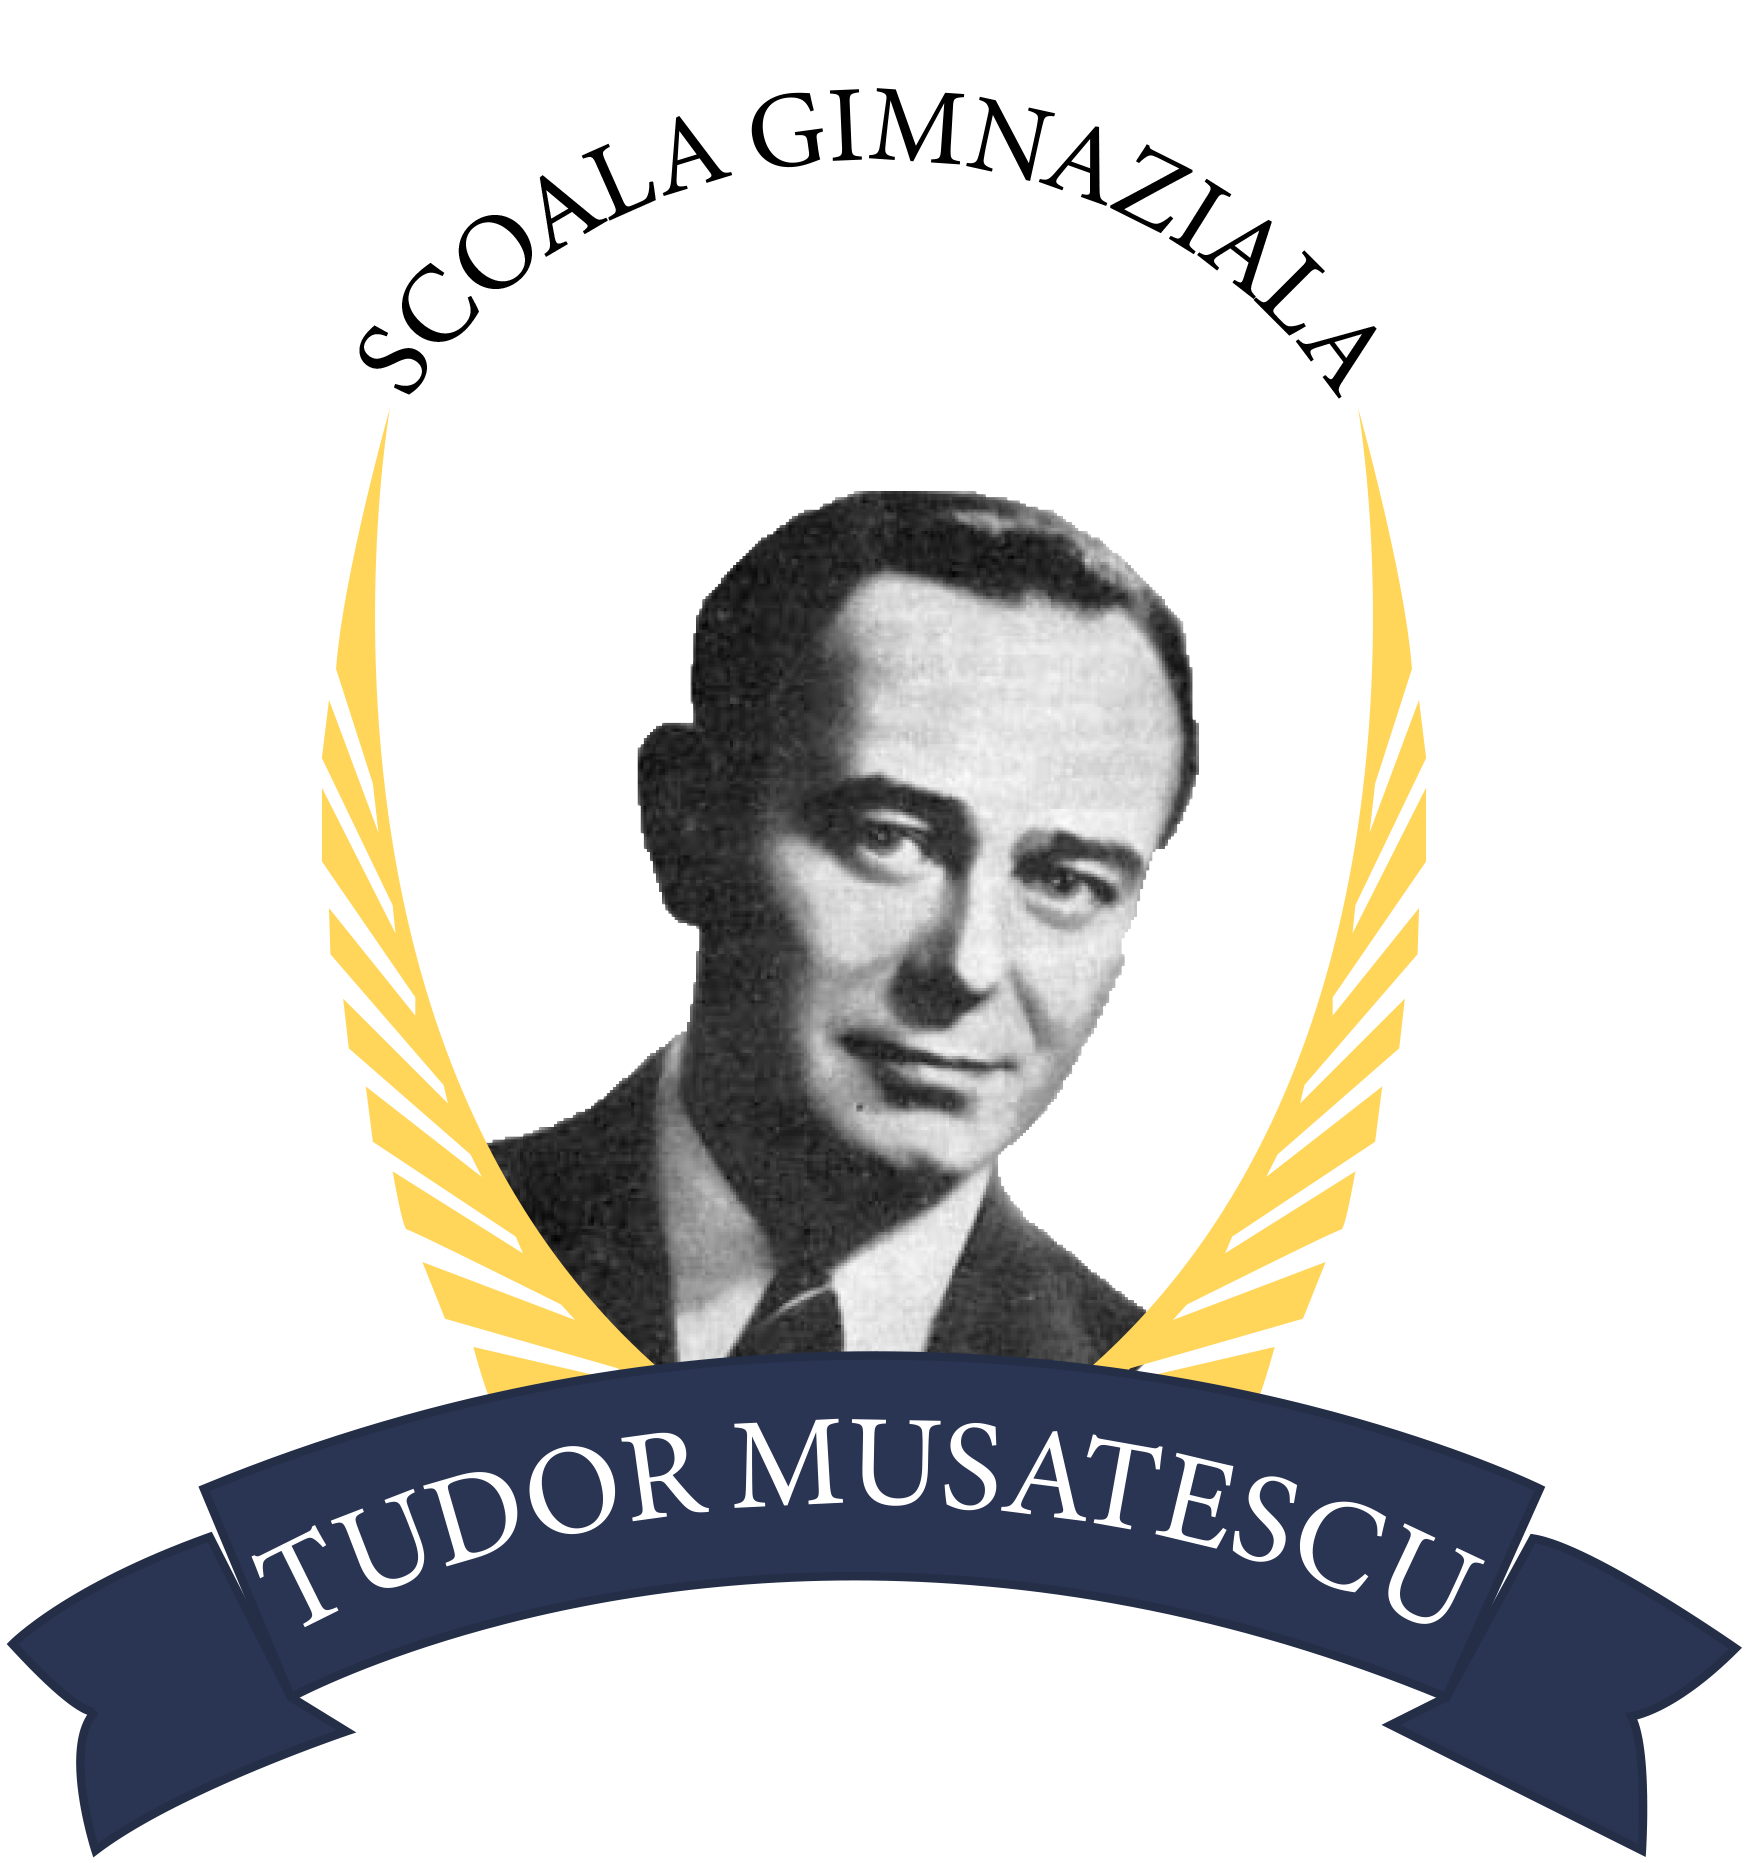 Tudor Musatescu